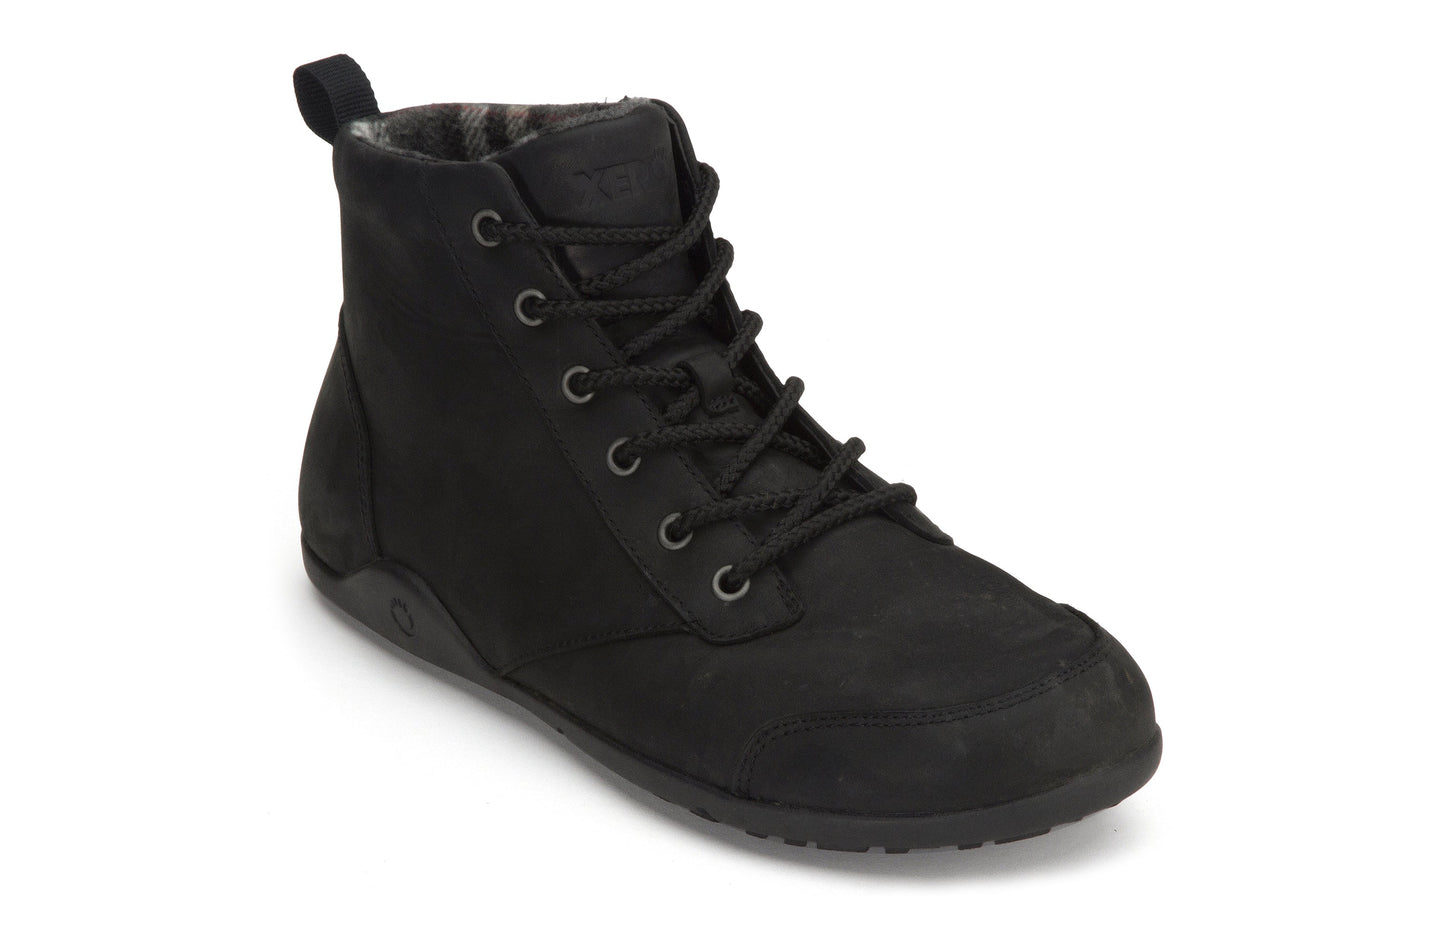 Xero Shoes Denver Leather barfods vinterstøvler til mænd i farven black, vinklet